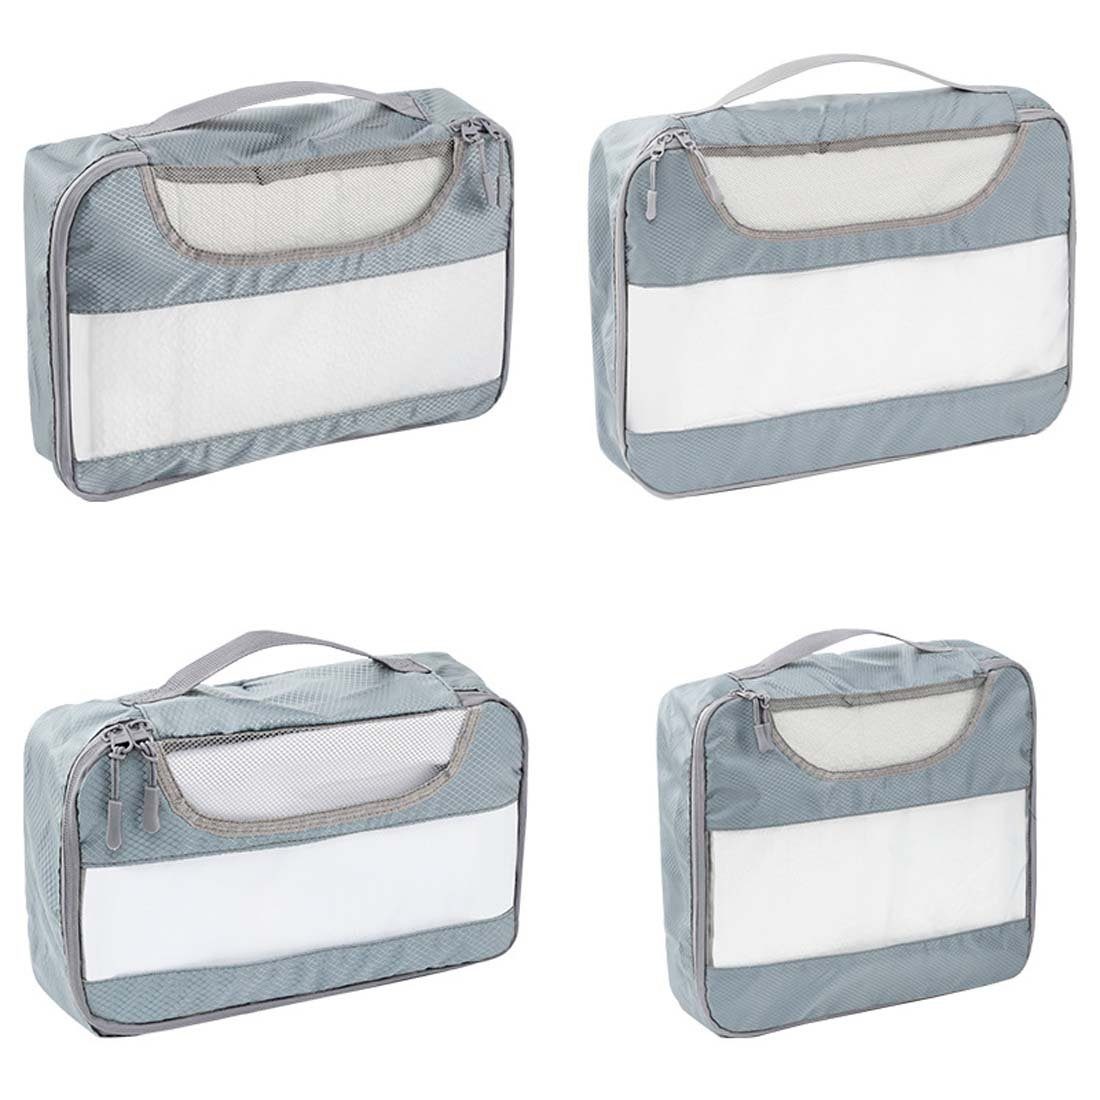 4 Reisetasche, grau (Kleidung, und Aufbewahrungstasche Kosmetik Aufbewahrungskorb Toilettenartikel YANN und Gepäck für St), Schuhe, Reise-Aufbewahrungstaschen-Set, Vierteiliges